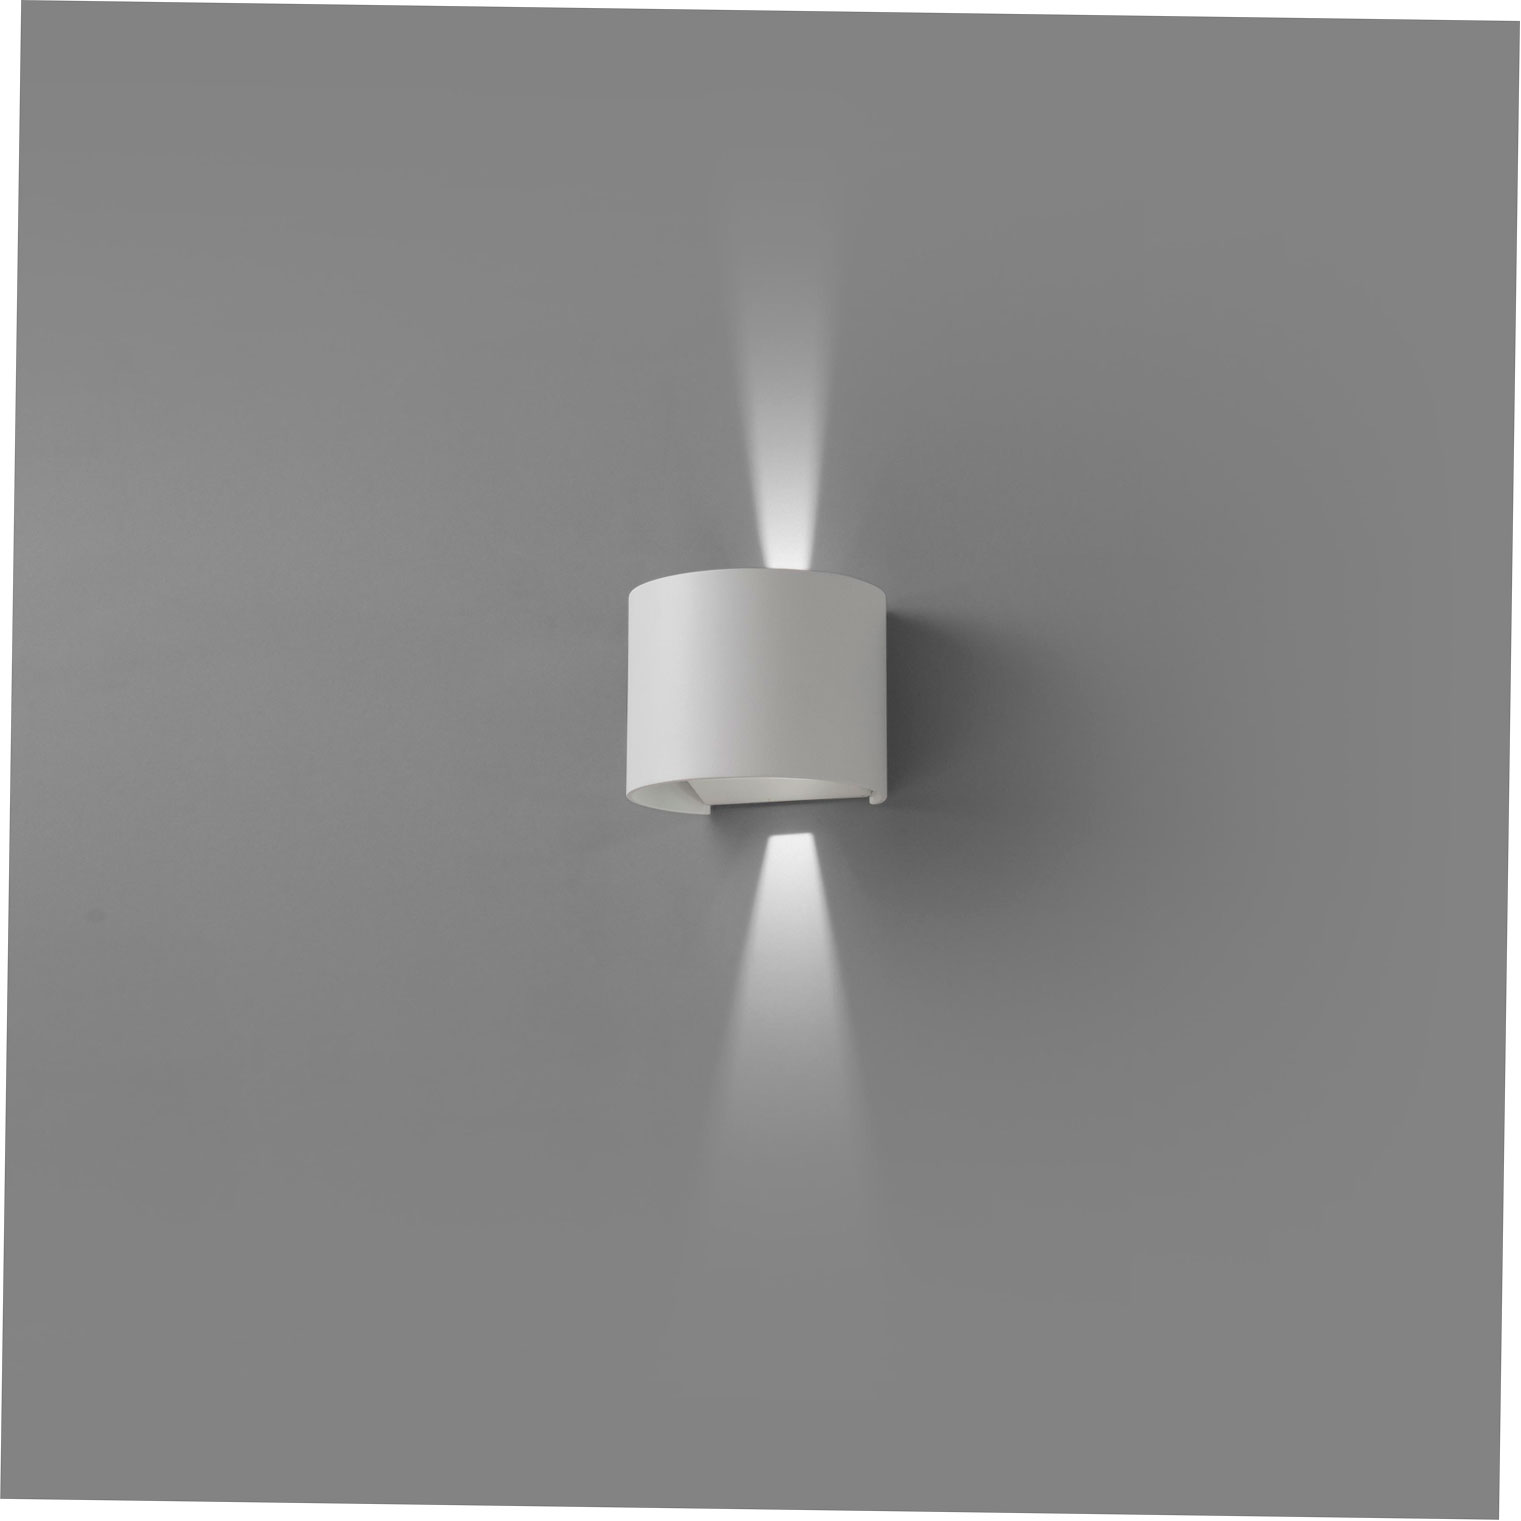 SUNSET WALL LAMP WHITE CREE LED 2x3W 3000K